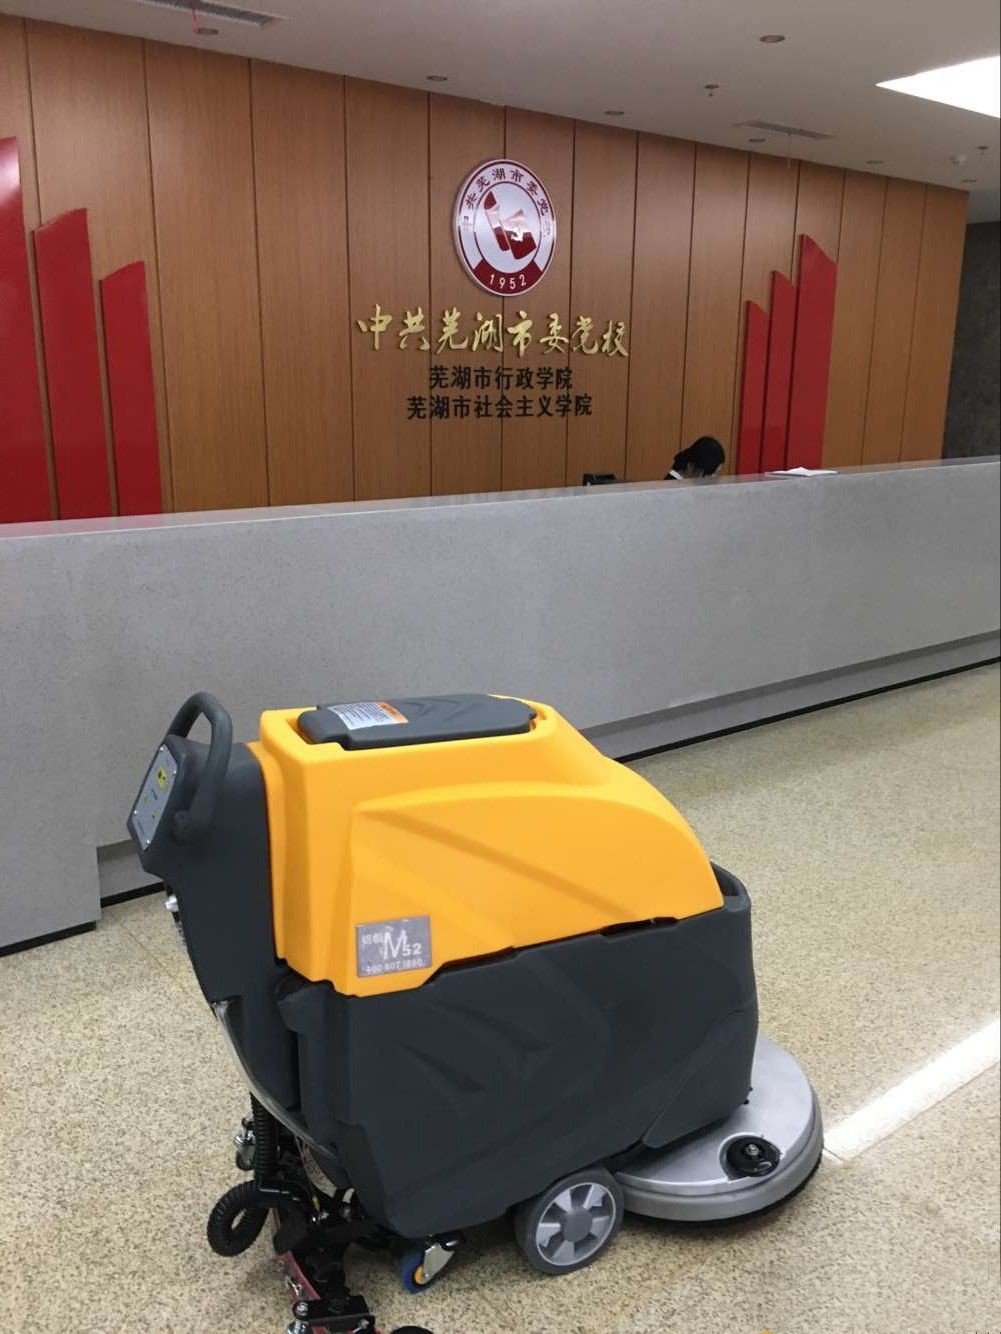 M52手推式洗地机服务于会议厅.jpg